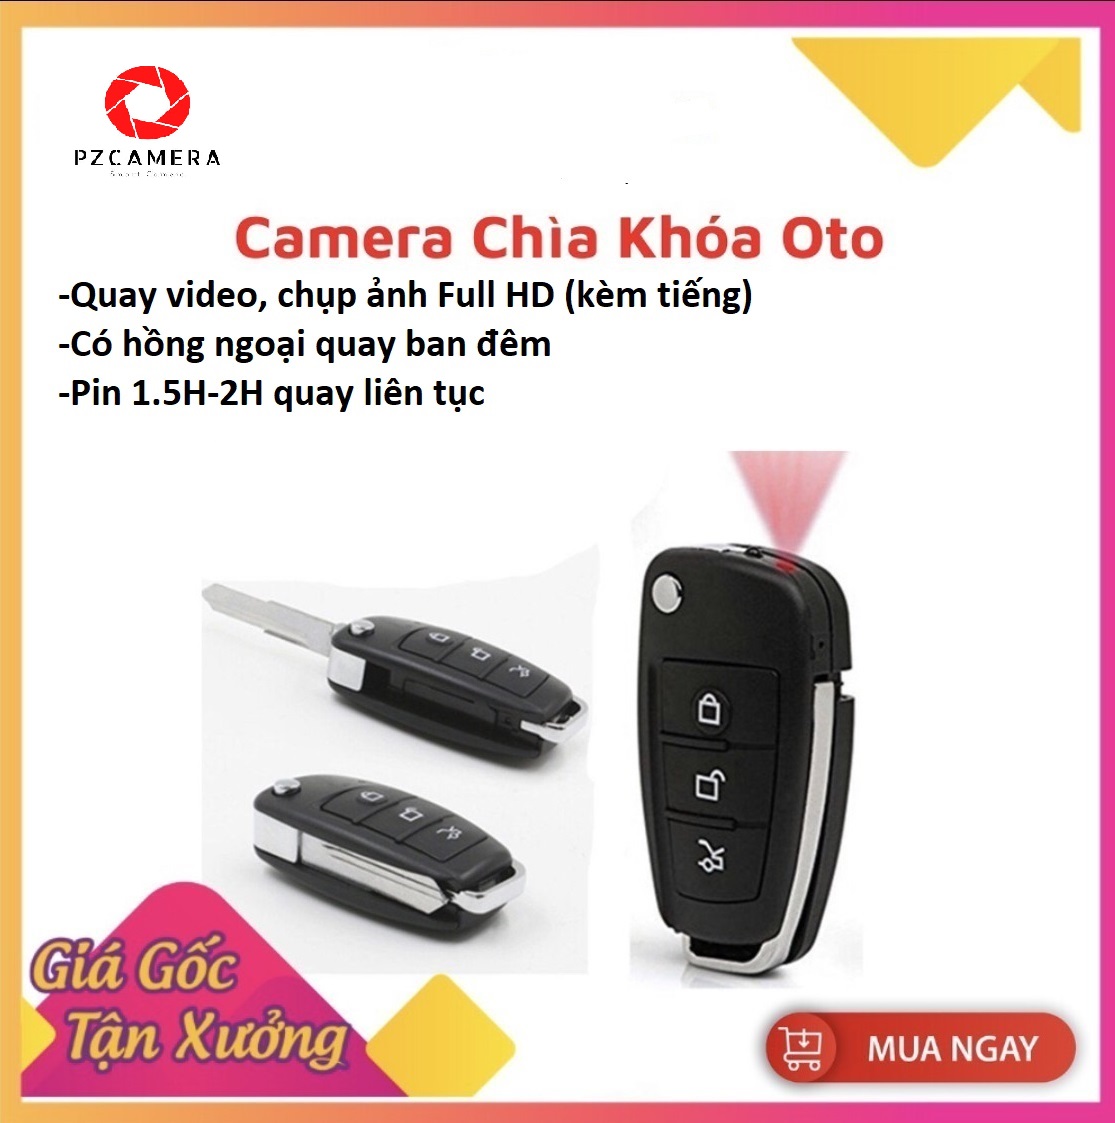 Camera Mini Chìa Khóa Oto S920 , Chất Lượng Full HD 1080P